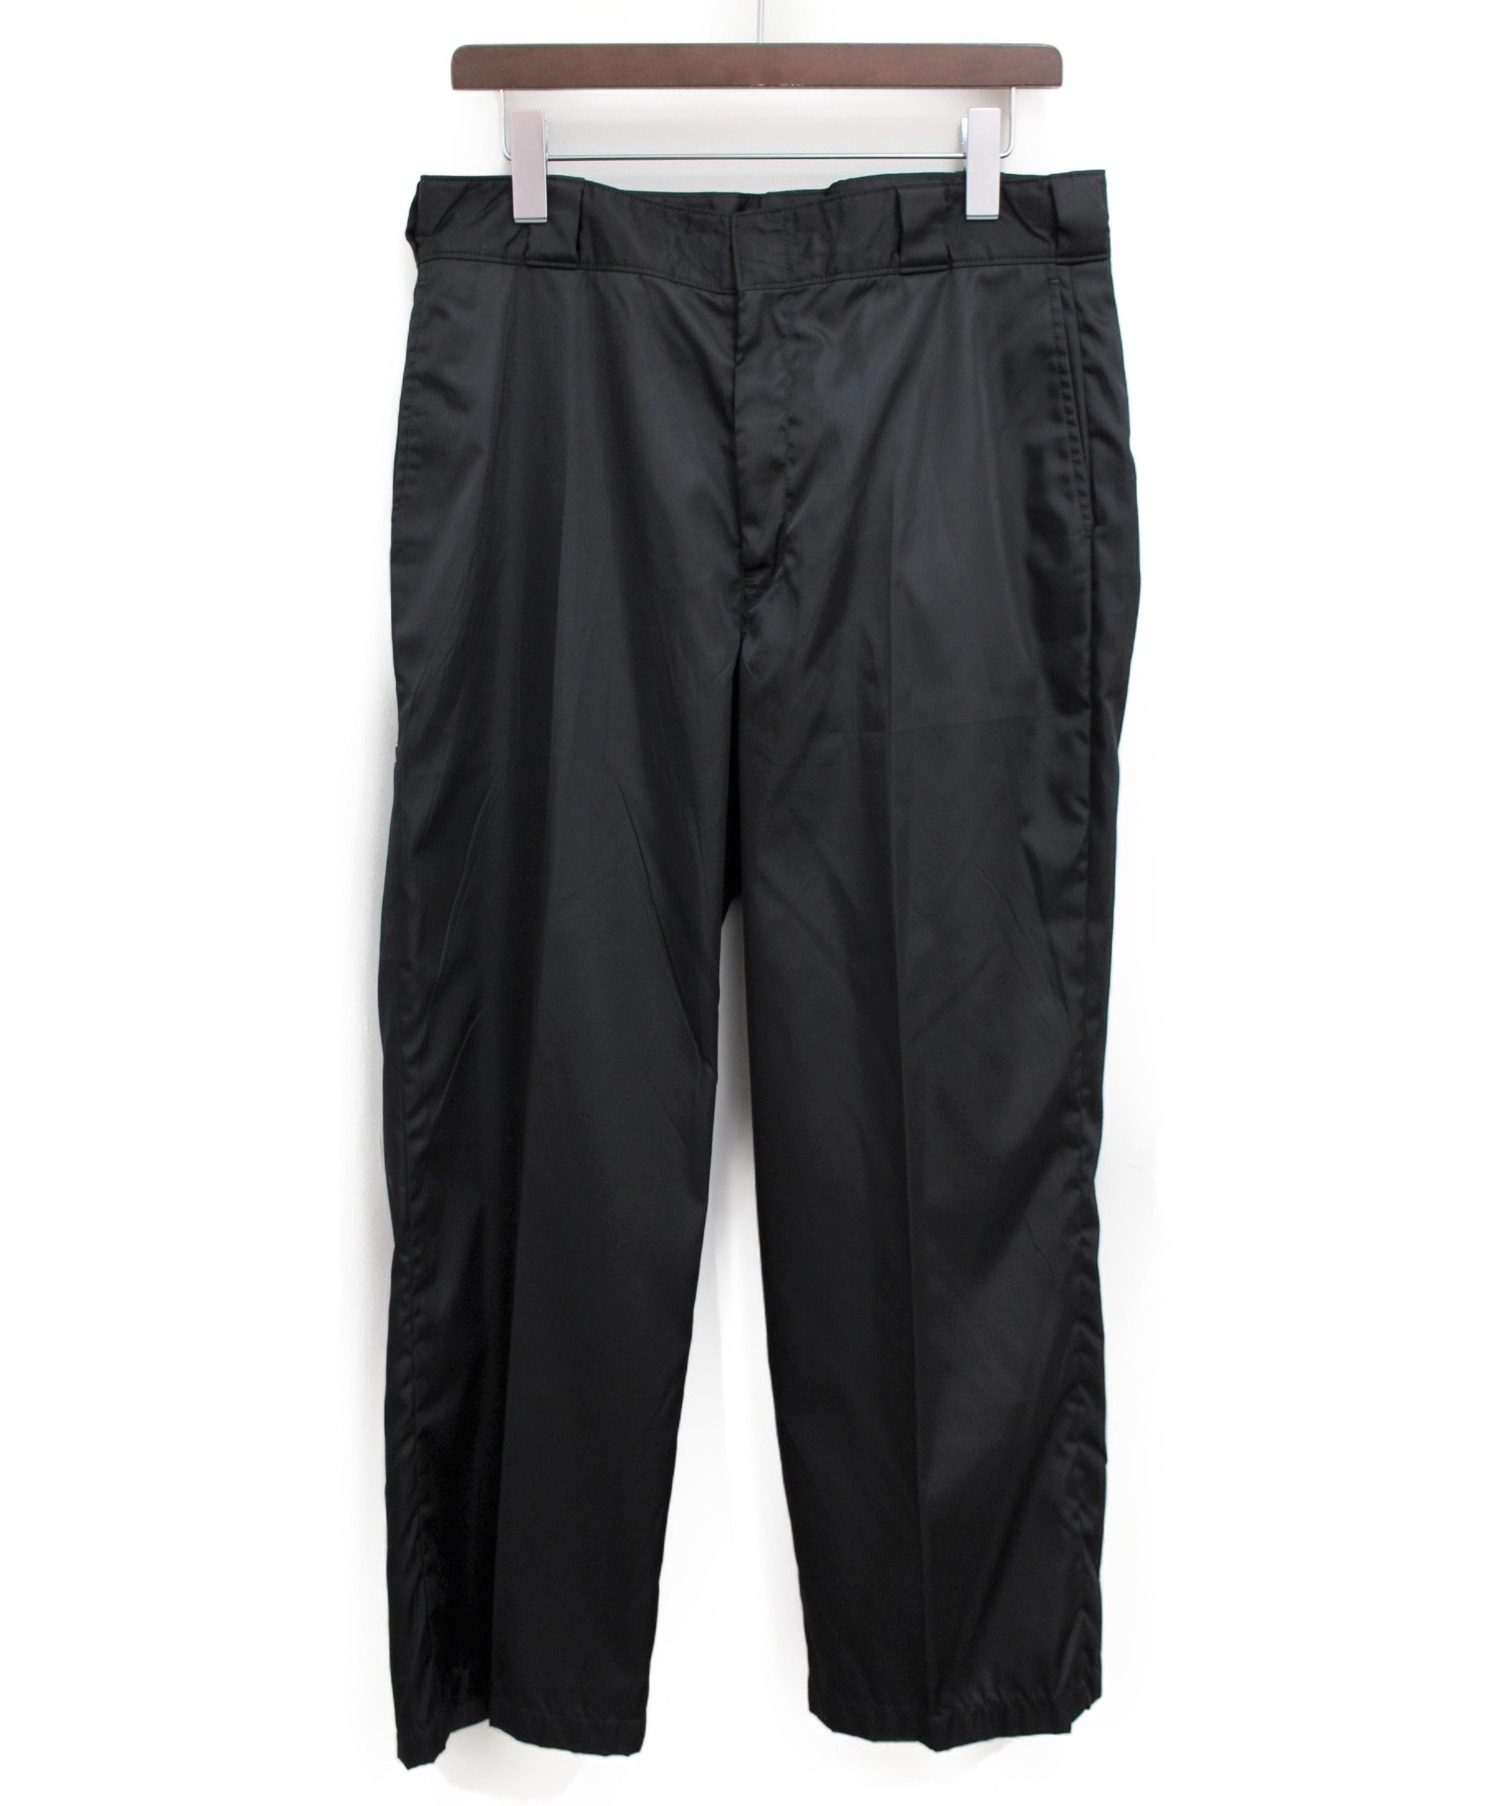 PRADA (プラダ) ポケットプレートロゴナイロンストレートパンツ ブラック サイズ:42